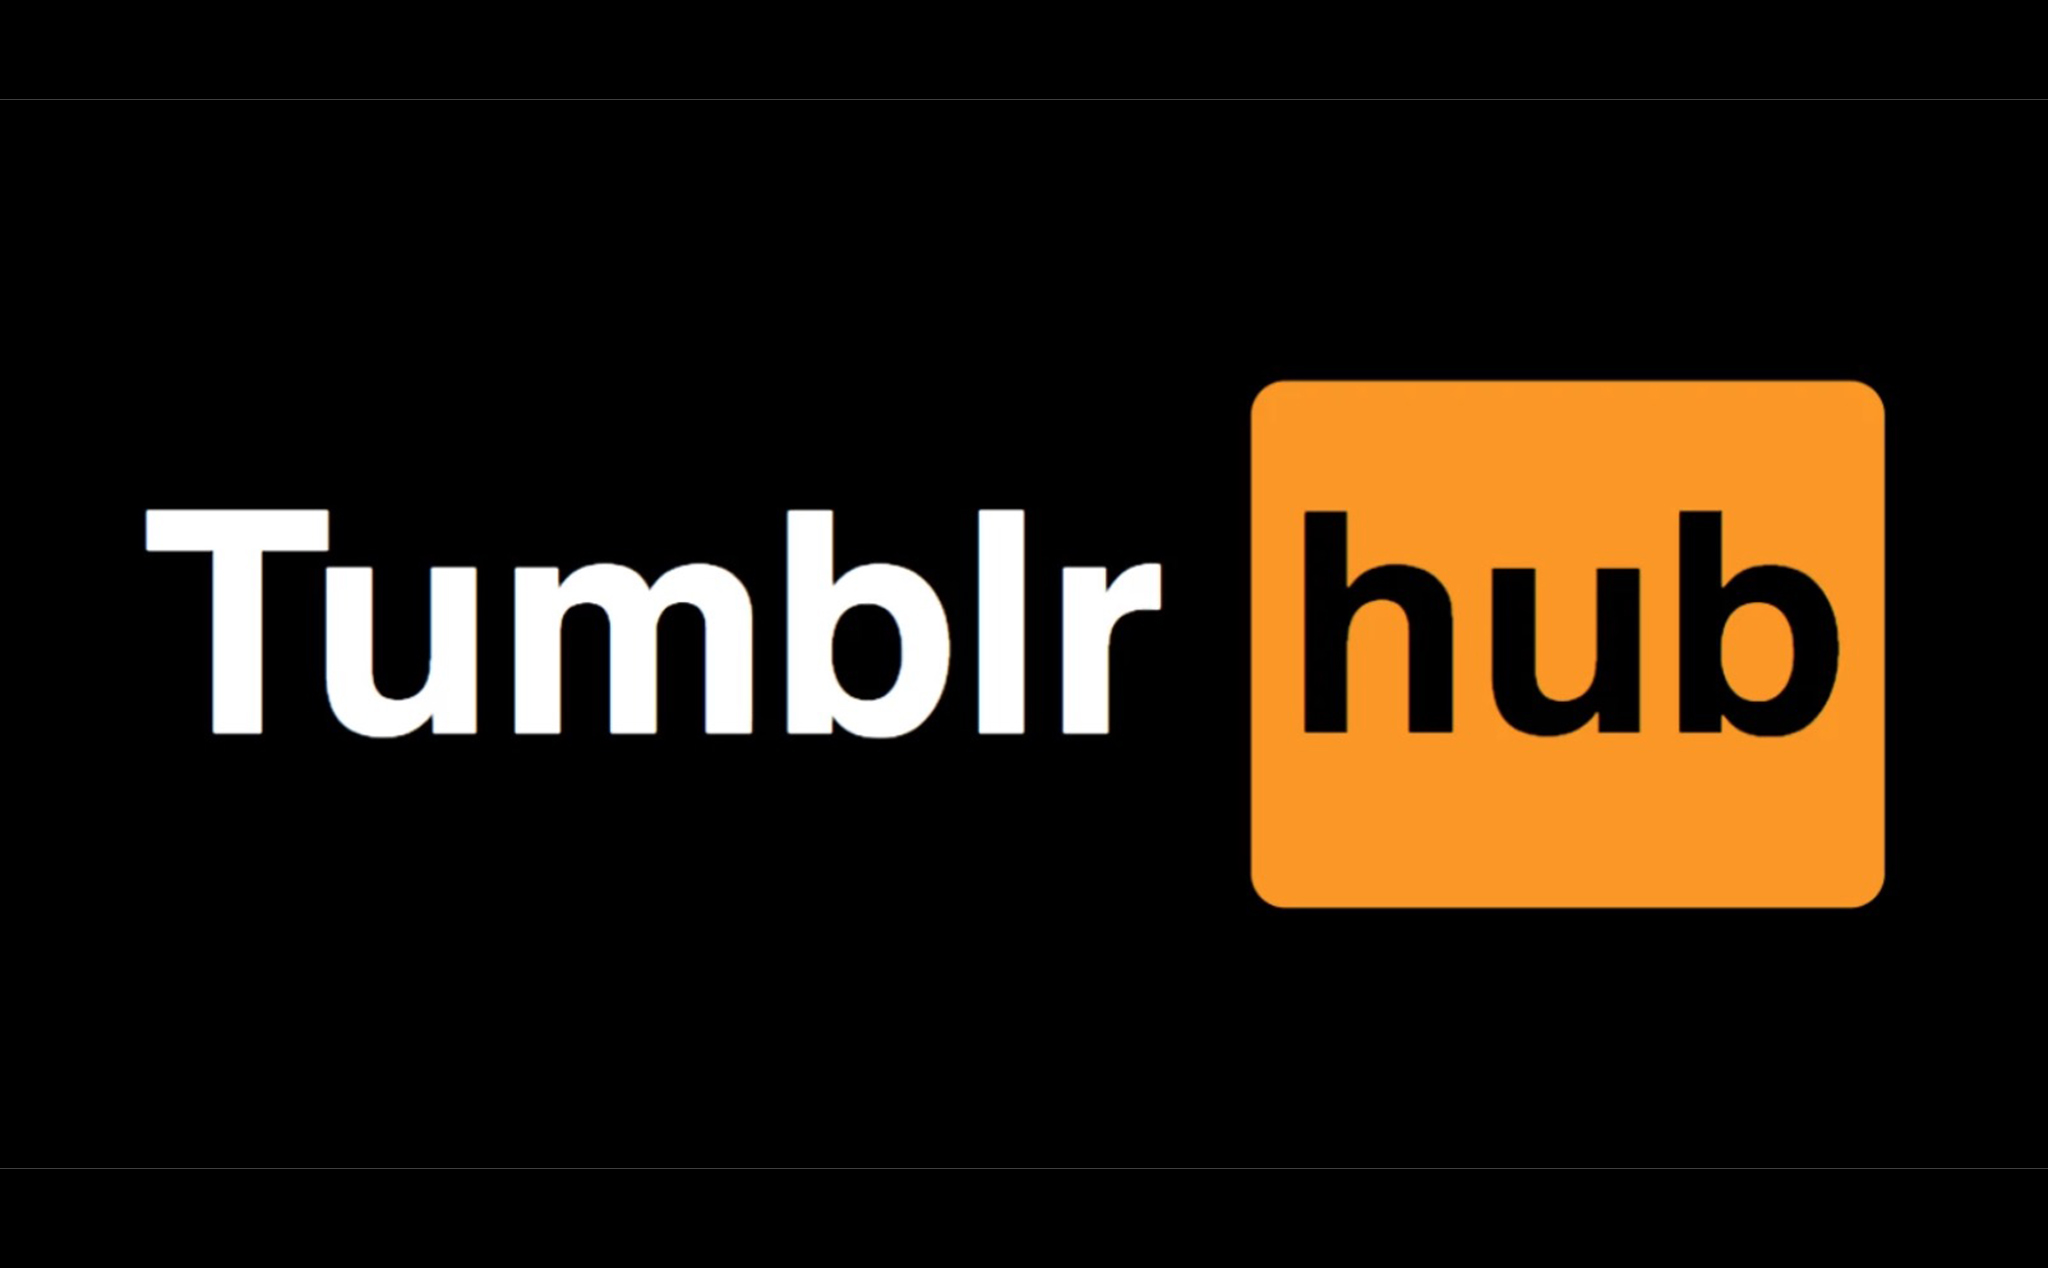 Pornhub muốn mua Tumblr để đem nội dung "mười tám +" trở lại